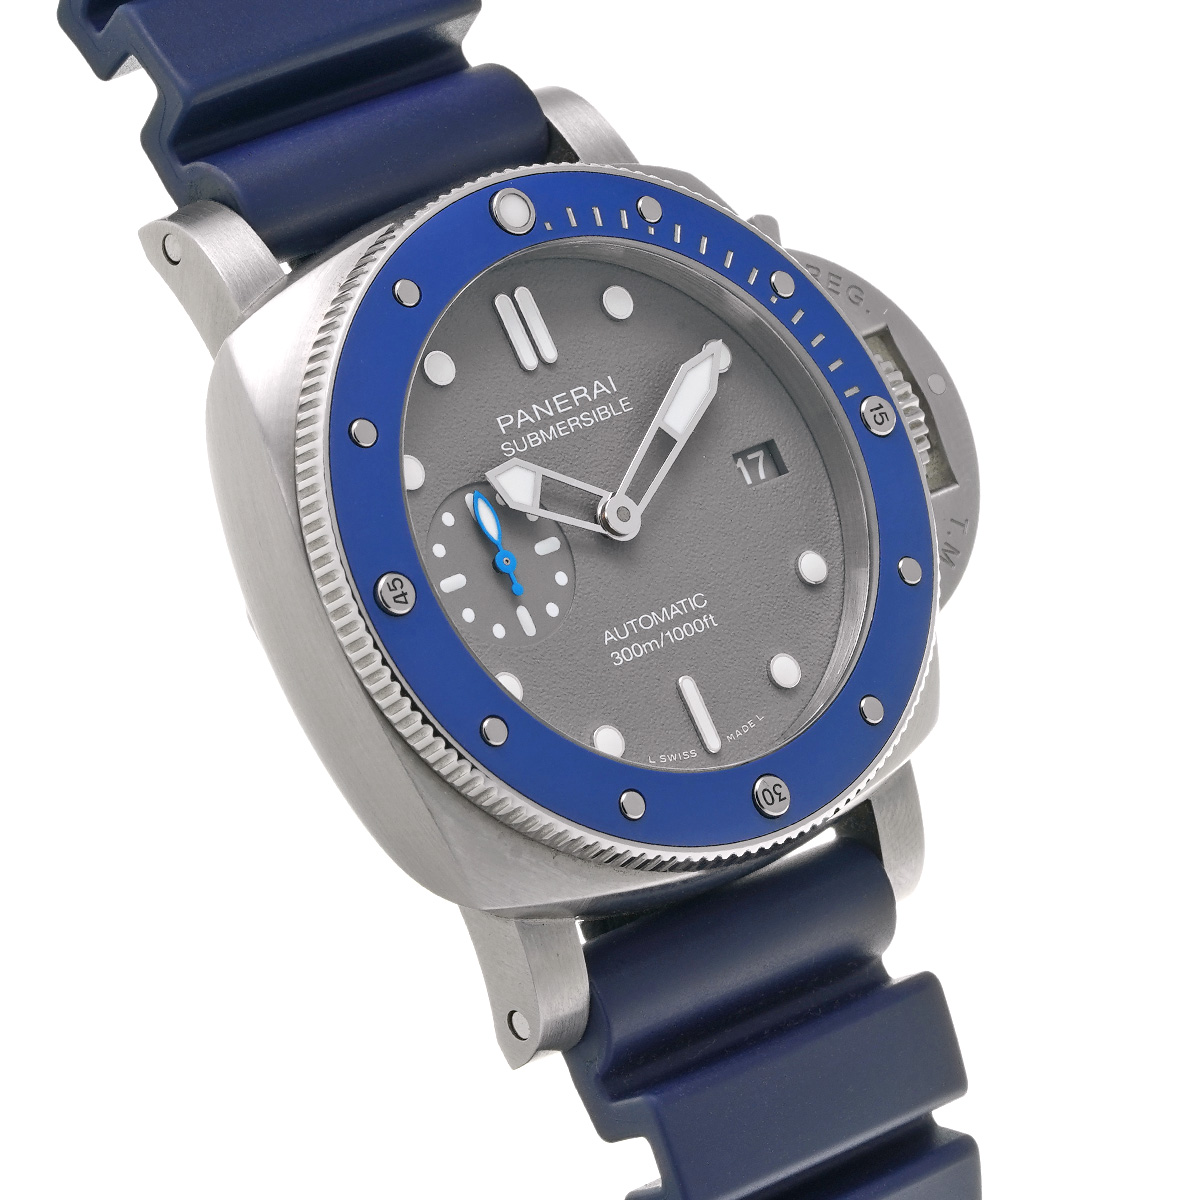 パネライ PANERAI PAM00959 V番(2019年製造) シャークグレー メンズ 腕時計